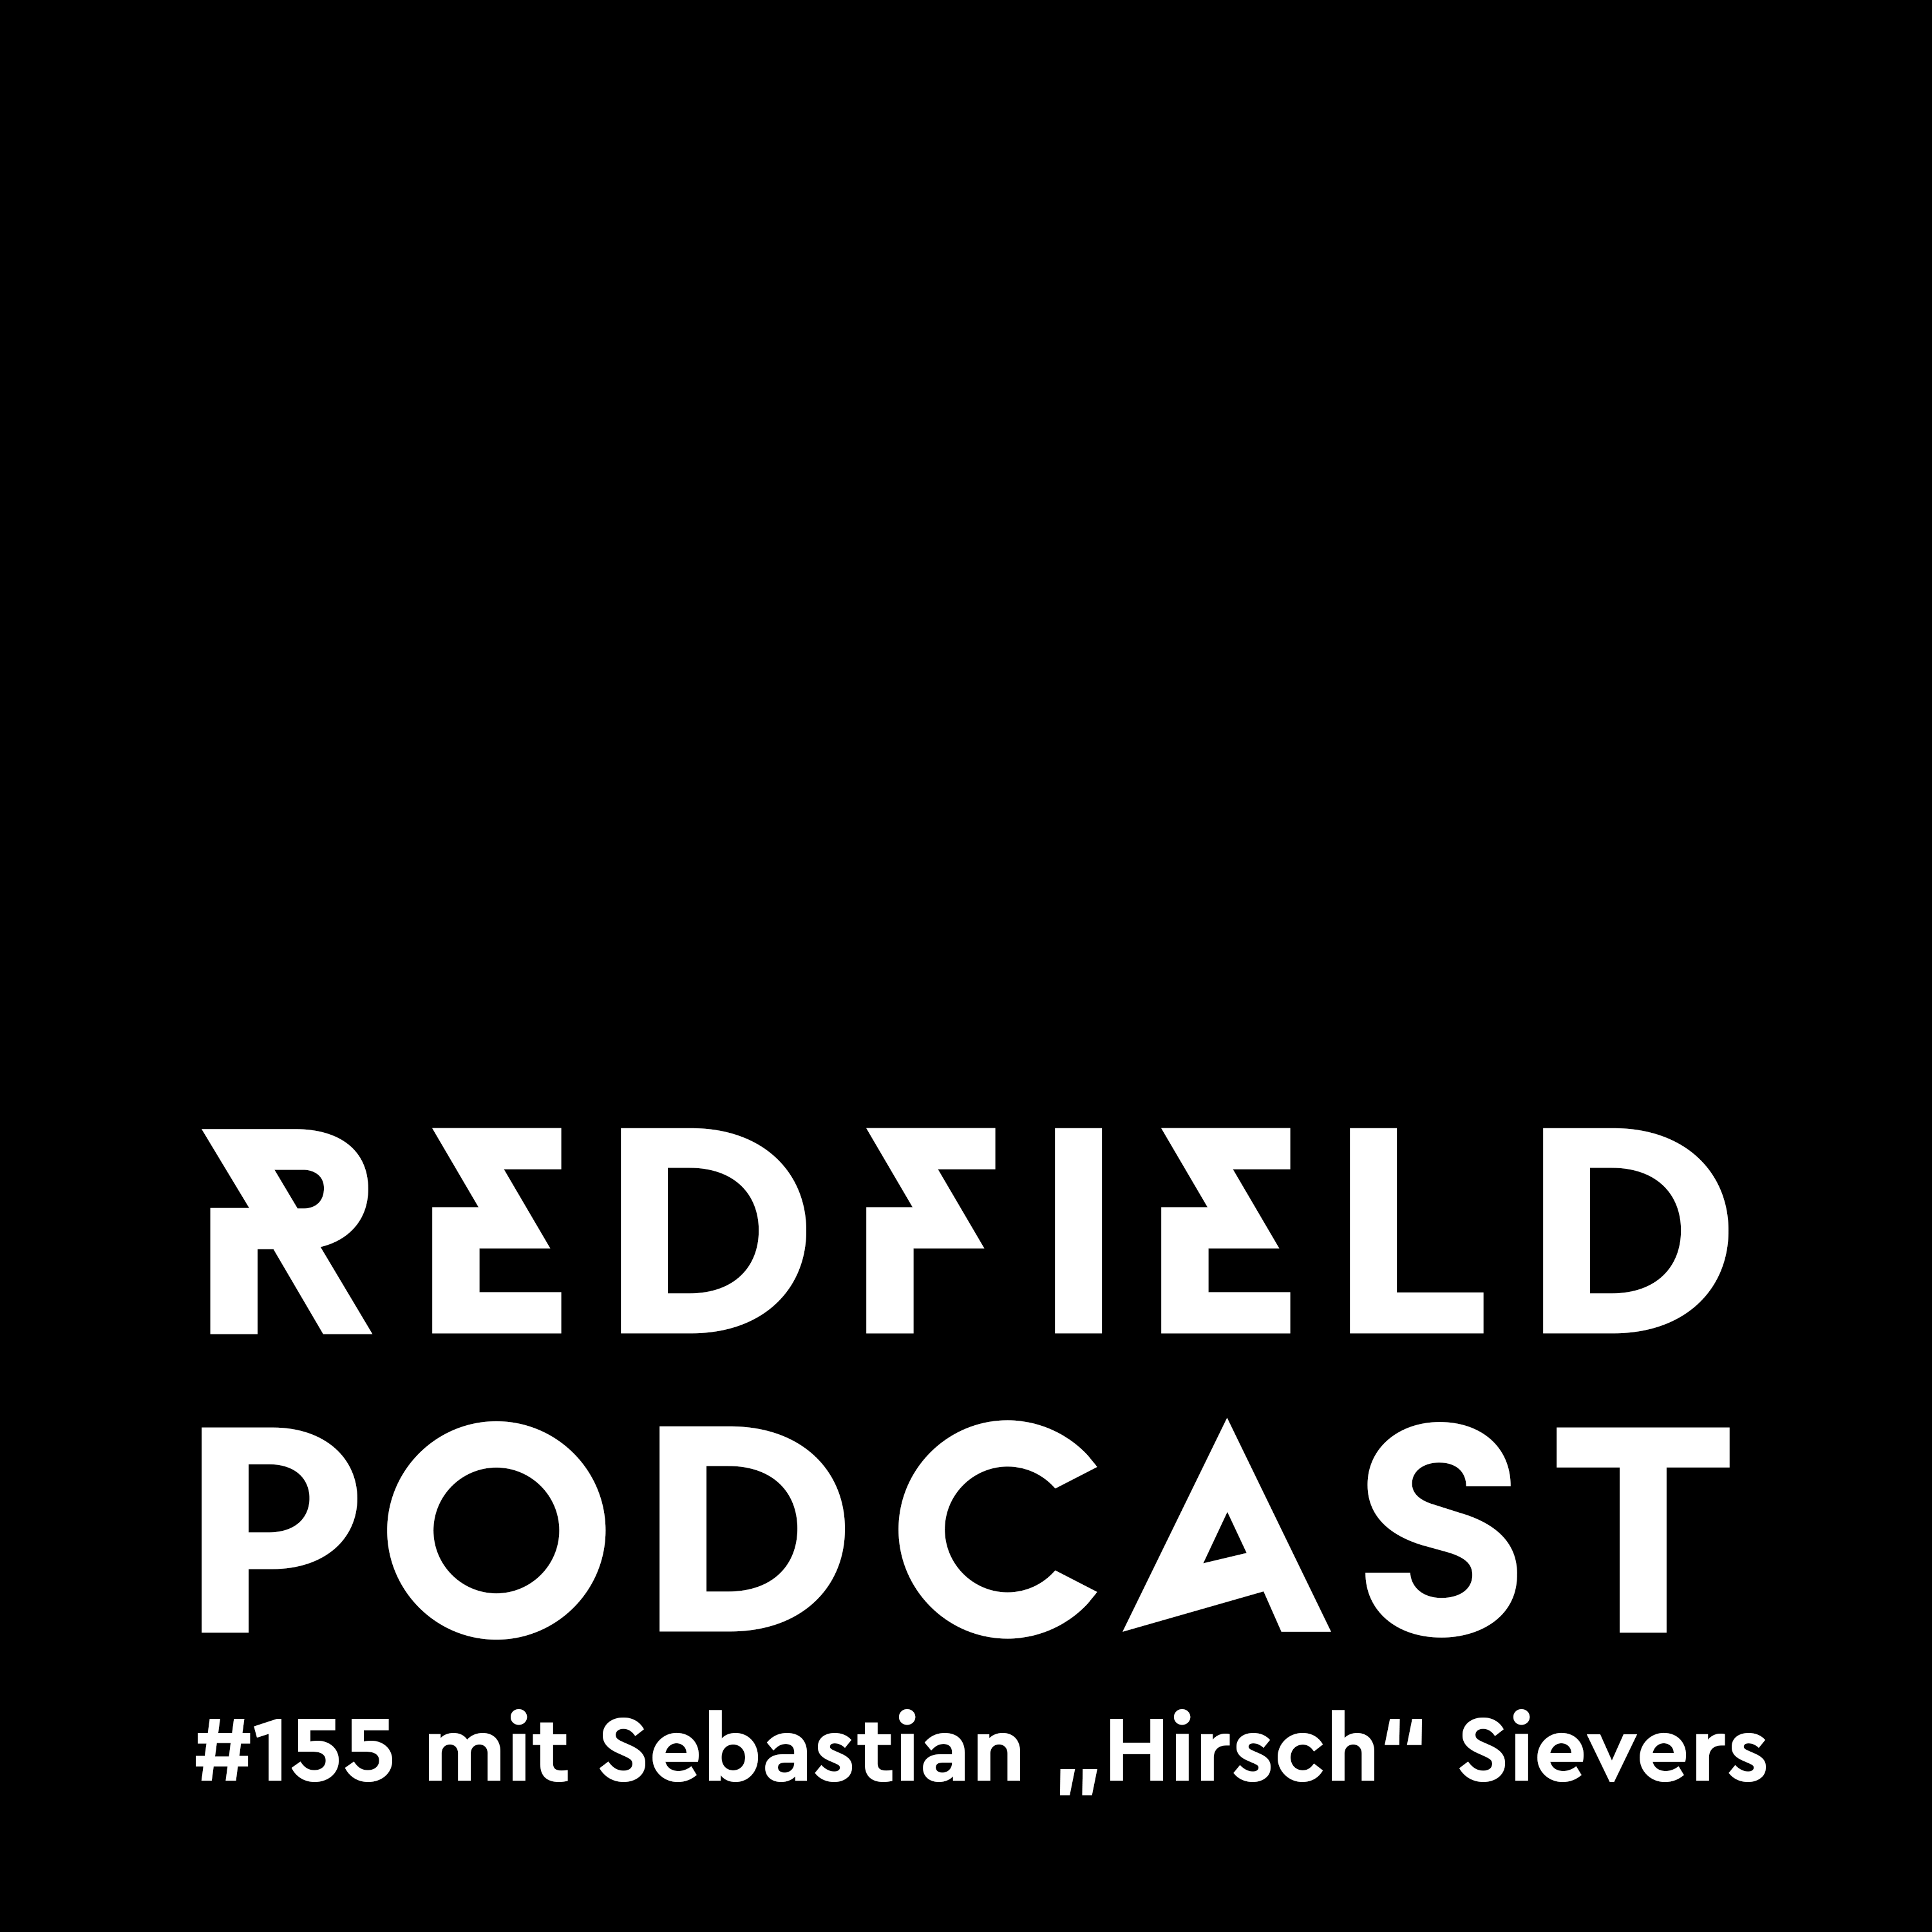 R#155 mit Sebastian „Hirsch“ Sievers“ von der Band Montreal